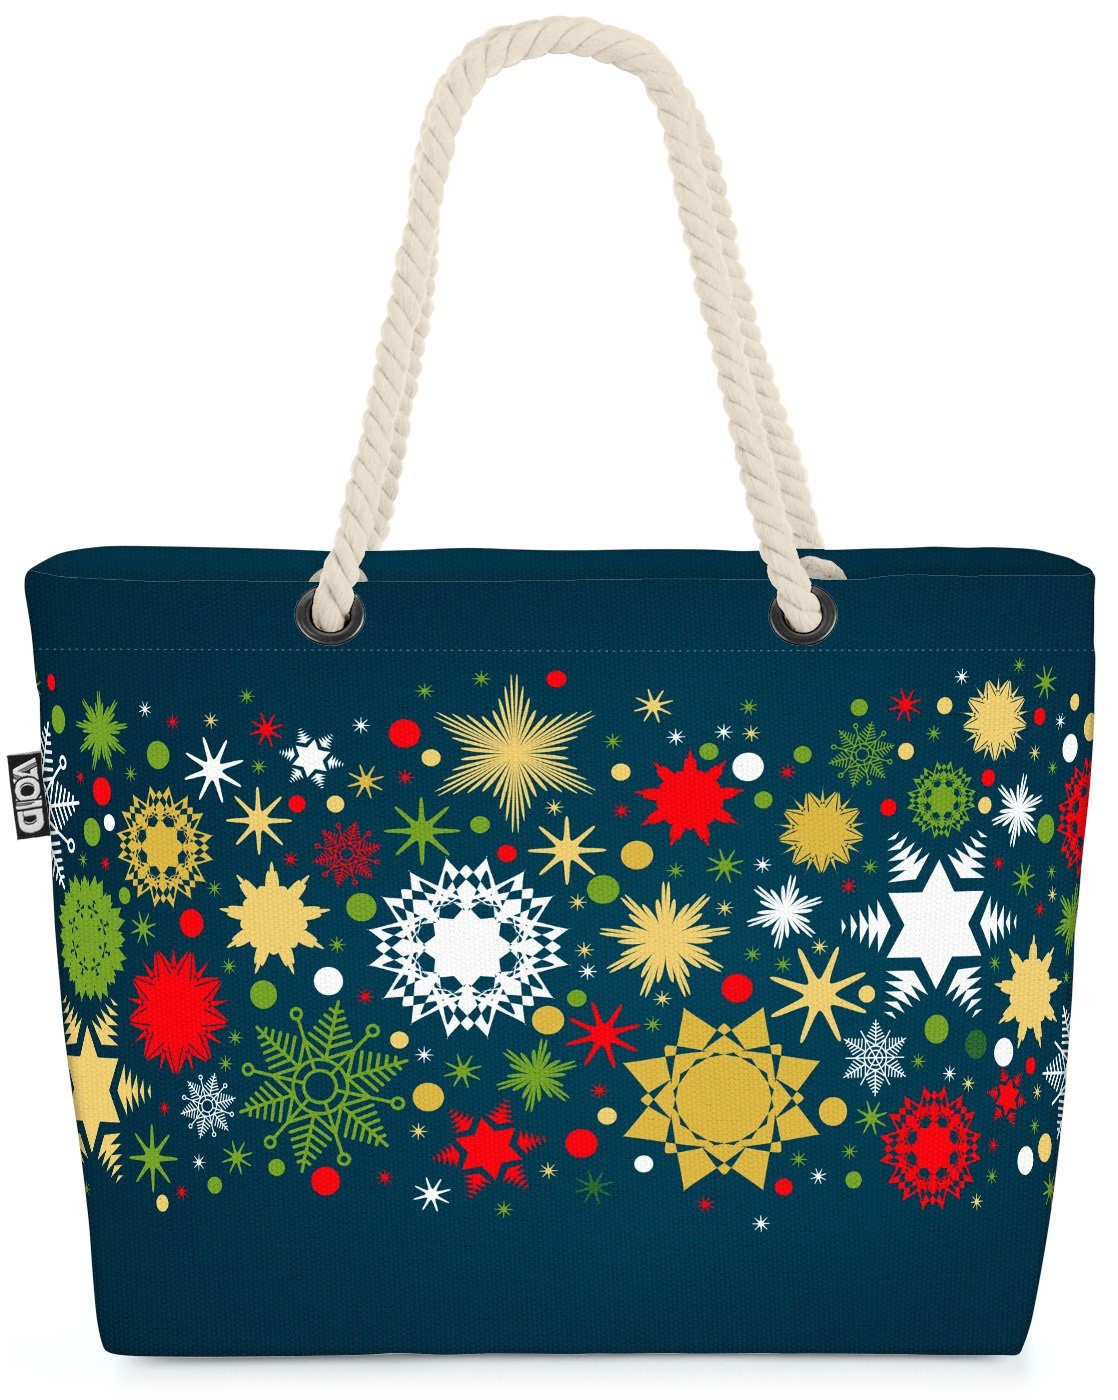 VOID Strandtasche (1-tlg), Sterne Weihnachten Winter Beach Bag Dekoration Deko Sterne Schmuck Weihnachten